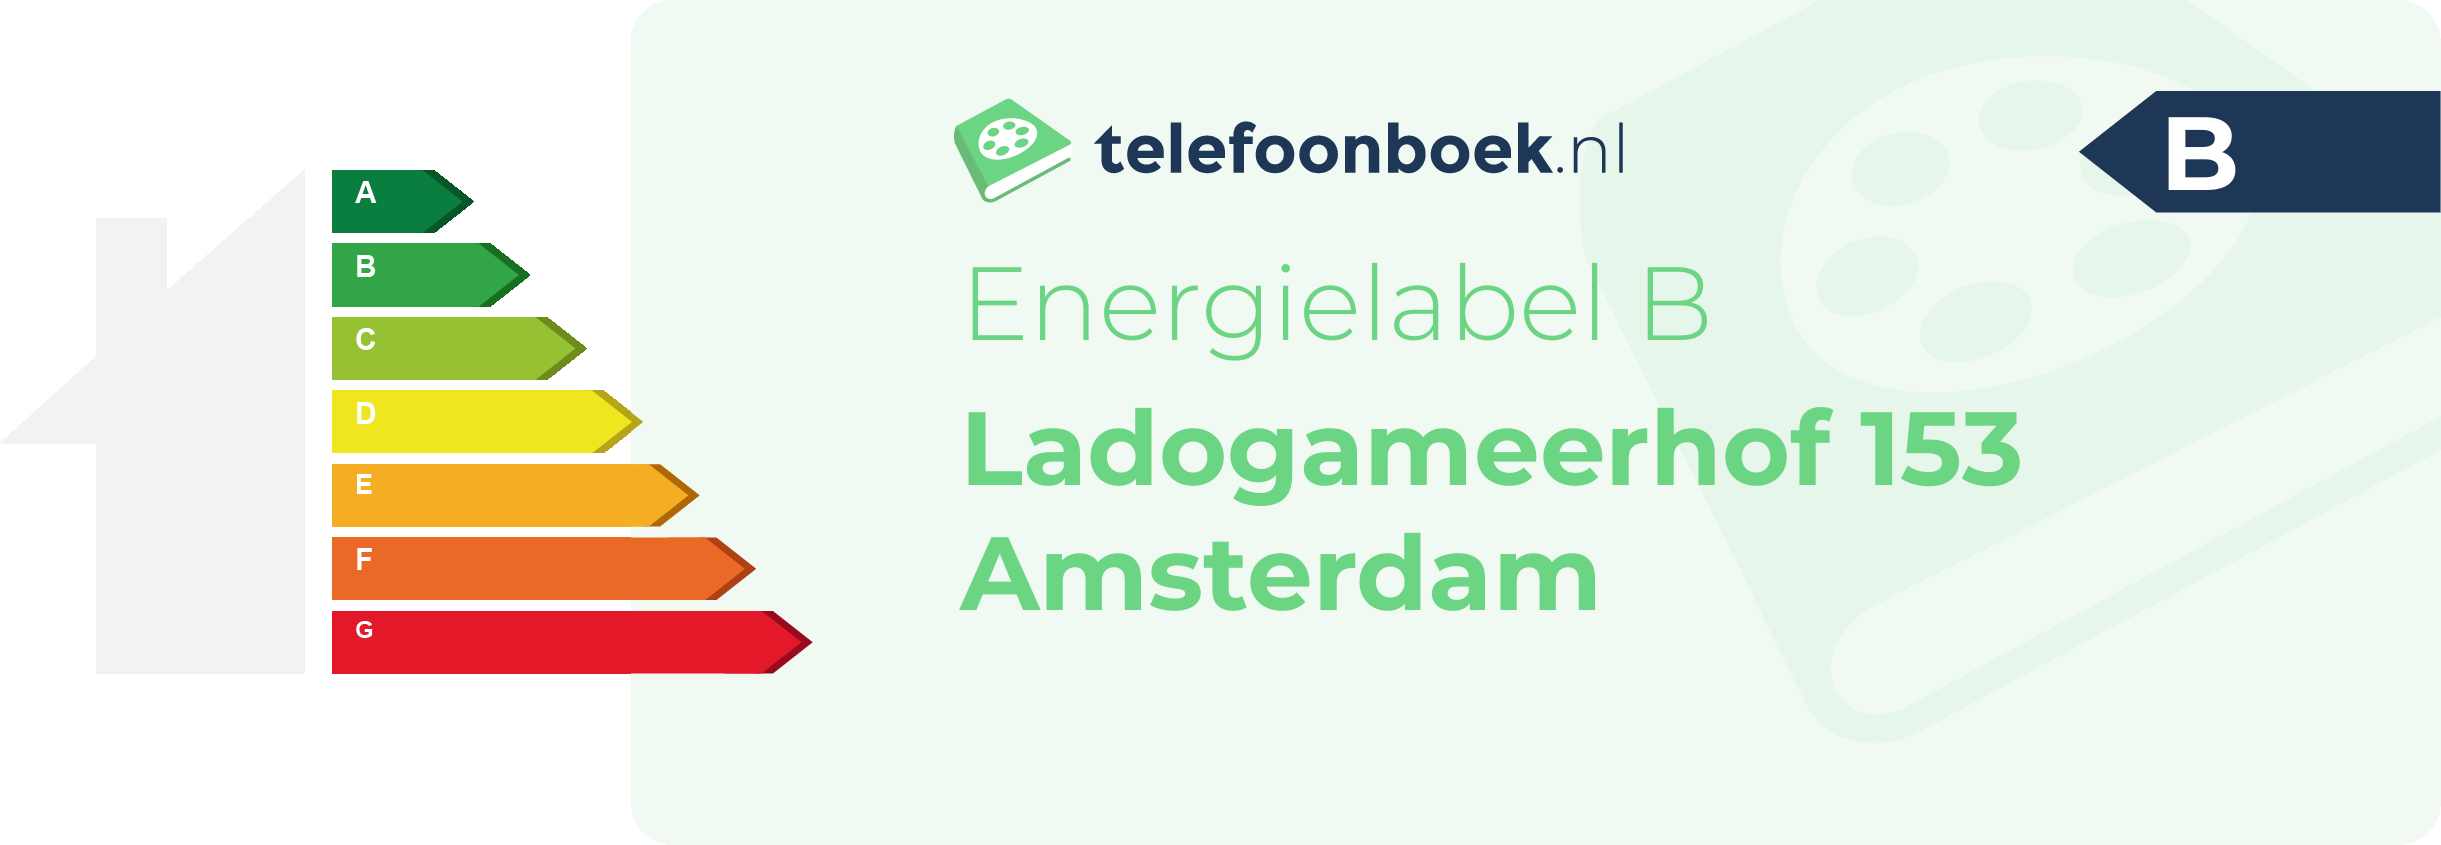 Energielabel Ladogameerhof 153 Amsterdam